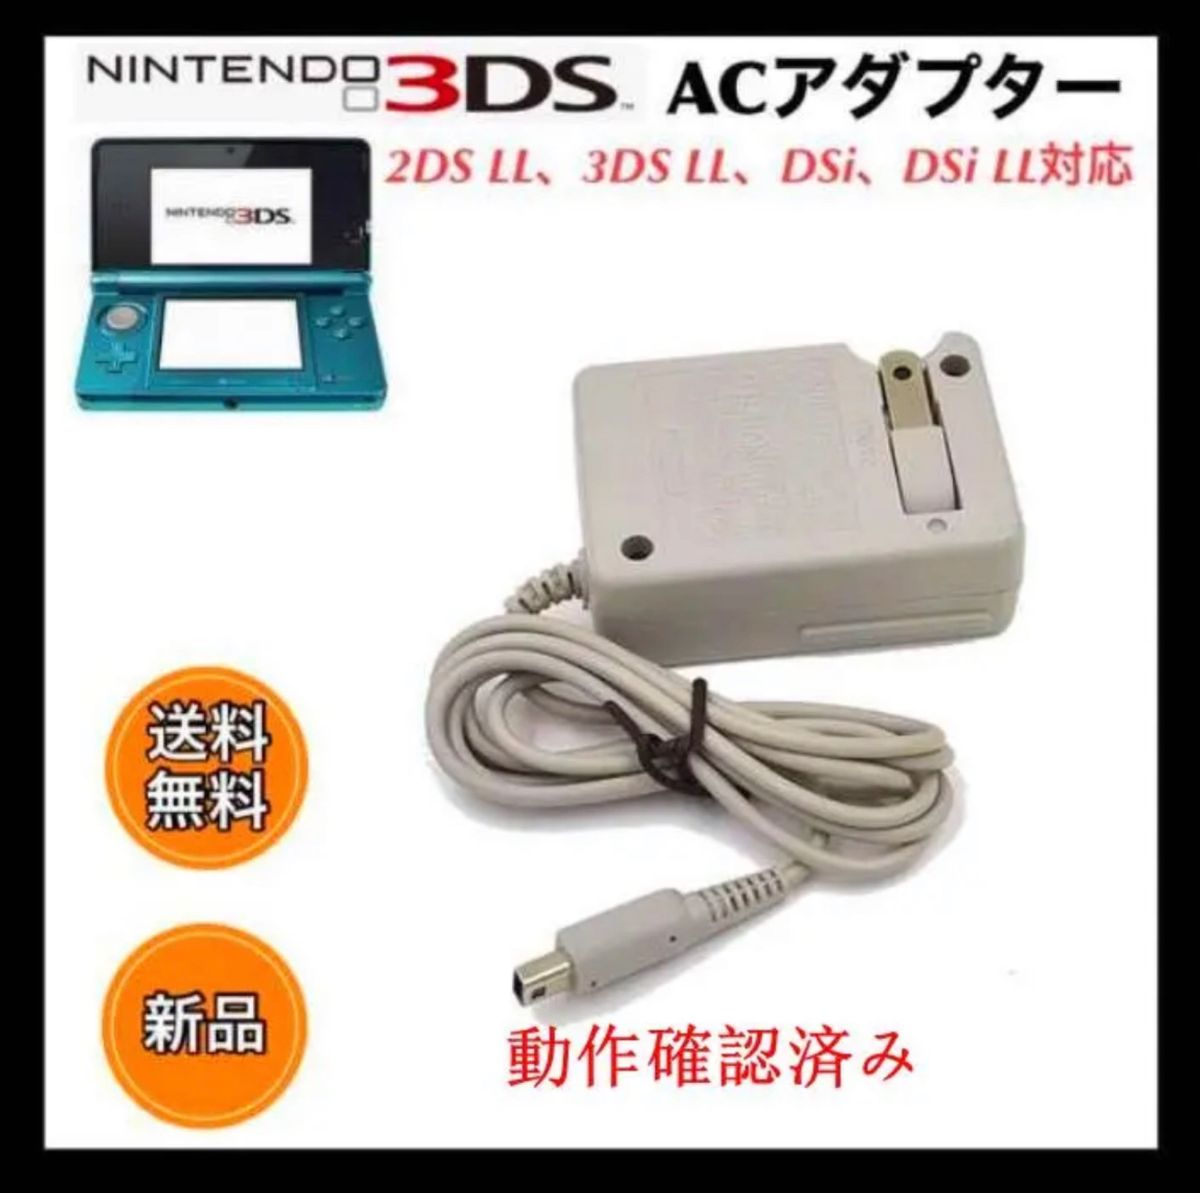 3DS 充電器 ACアダプター - 携帯用ゲーム本体